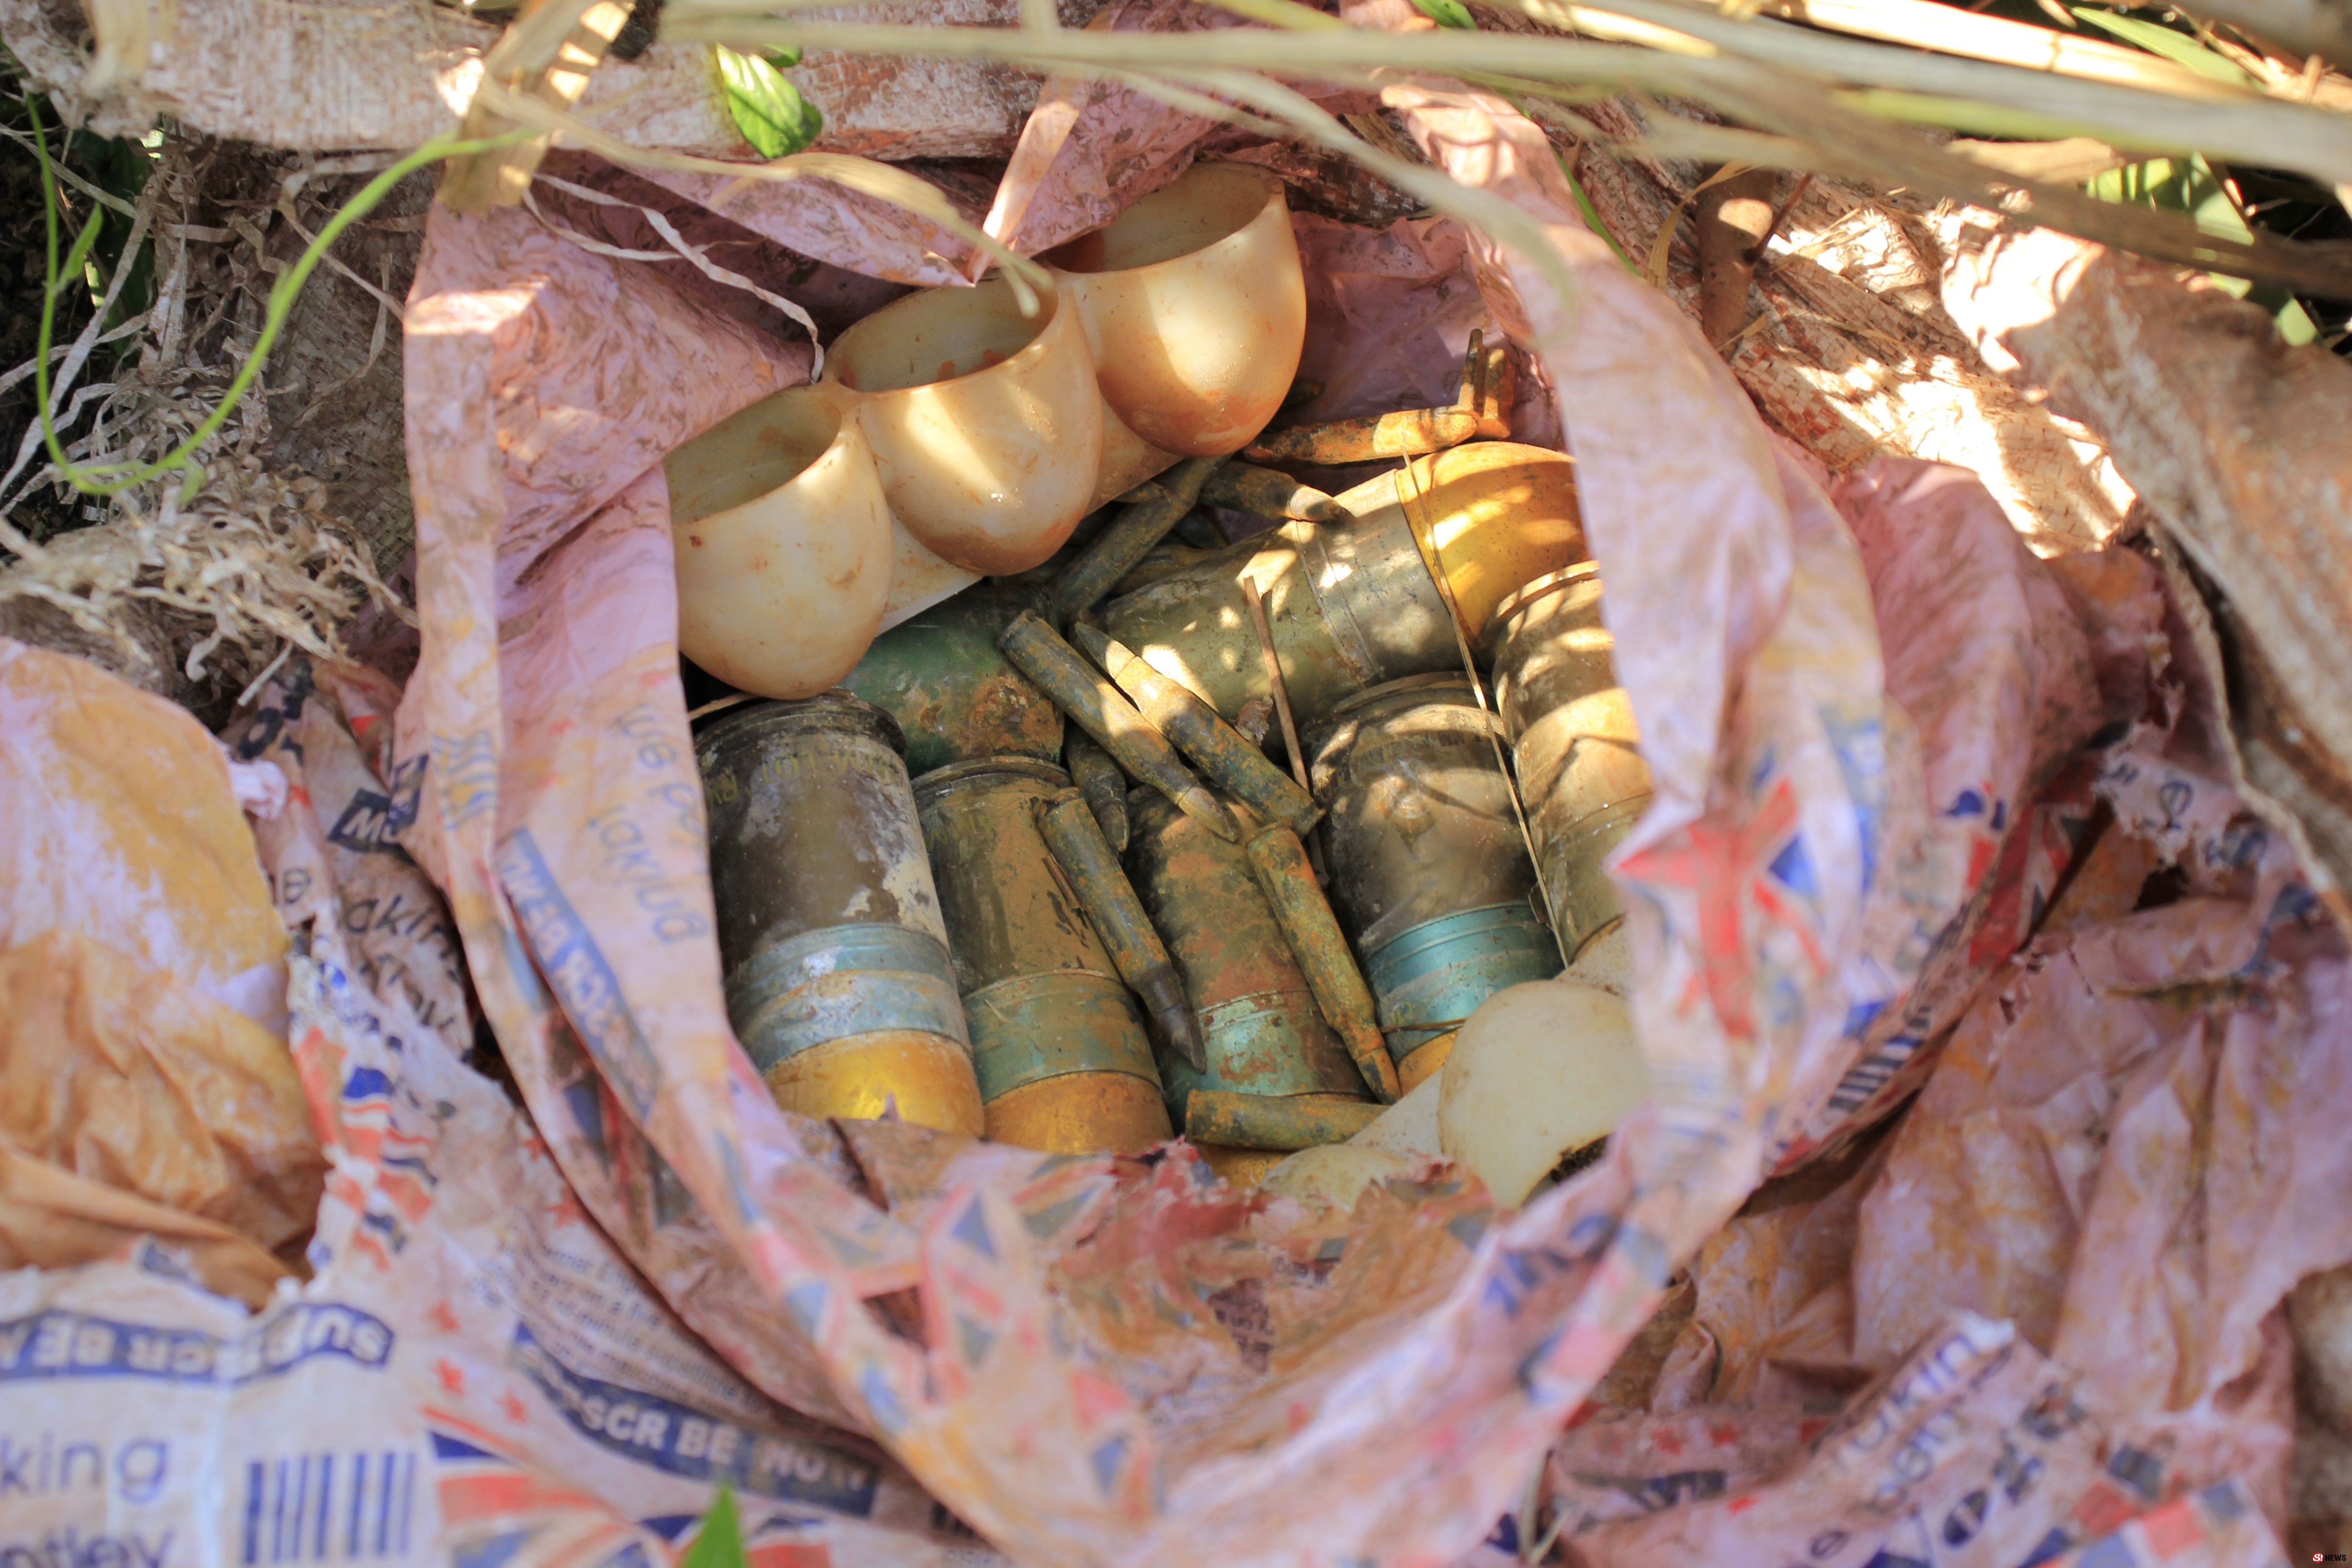 ชาวบ้านตะลึง! พบลูกระเบิด “เอ็ม 79” พร้อมอาวุธสงครามซุกถุงปุ๋ยทิ้งใต้ต้นกล้วย